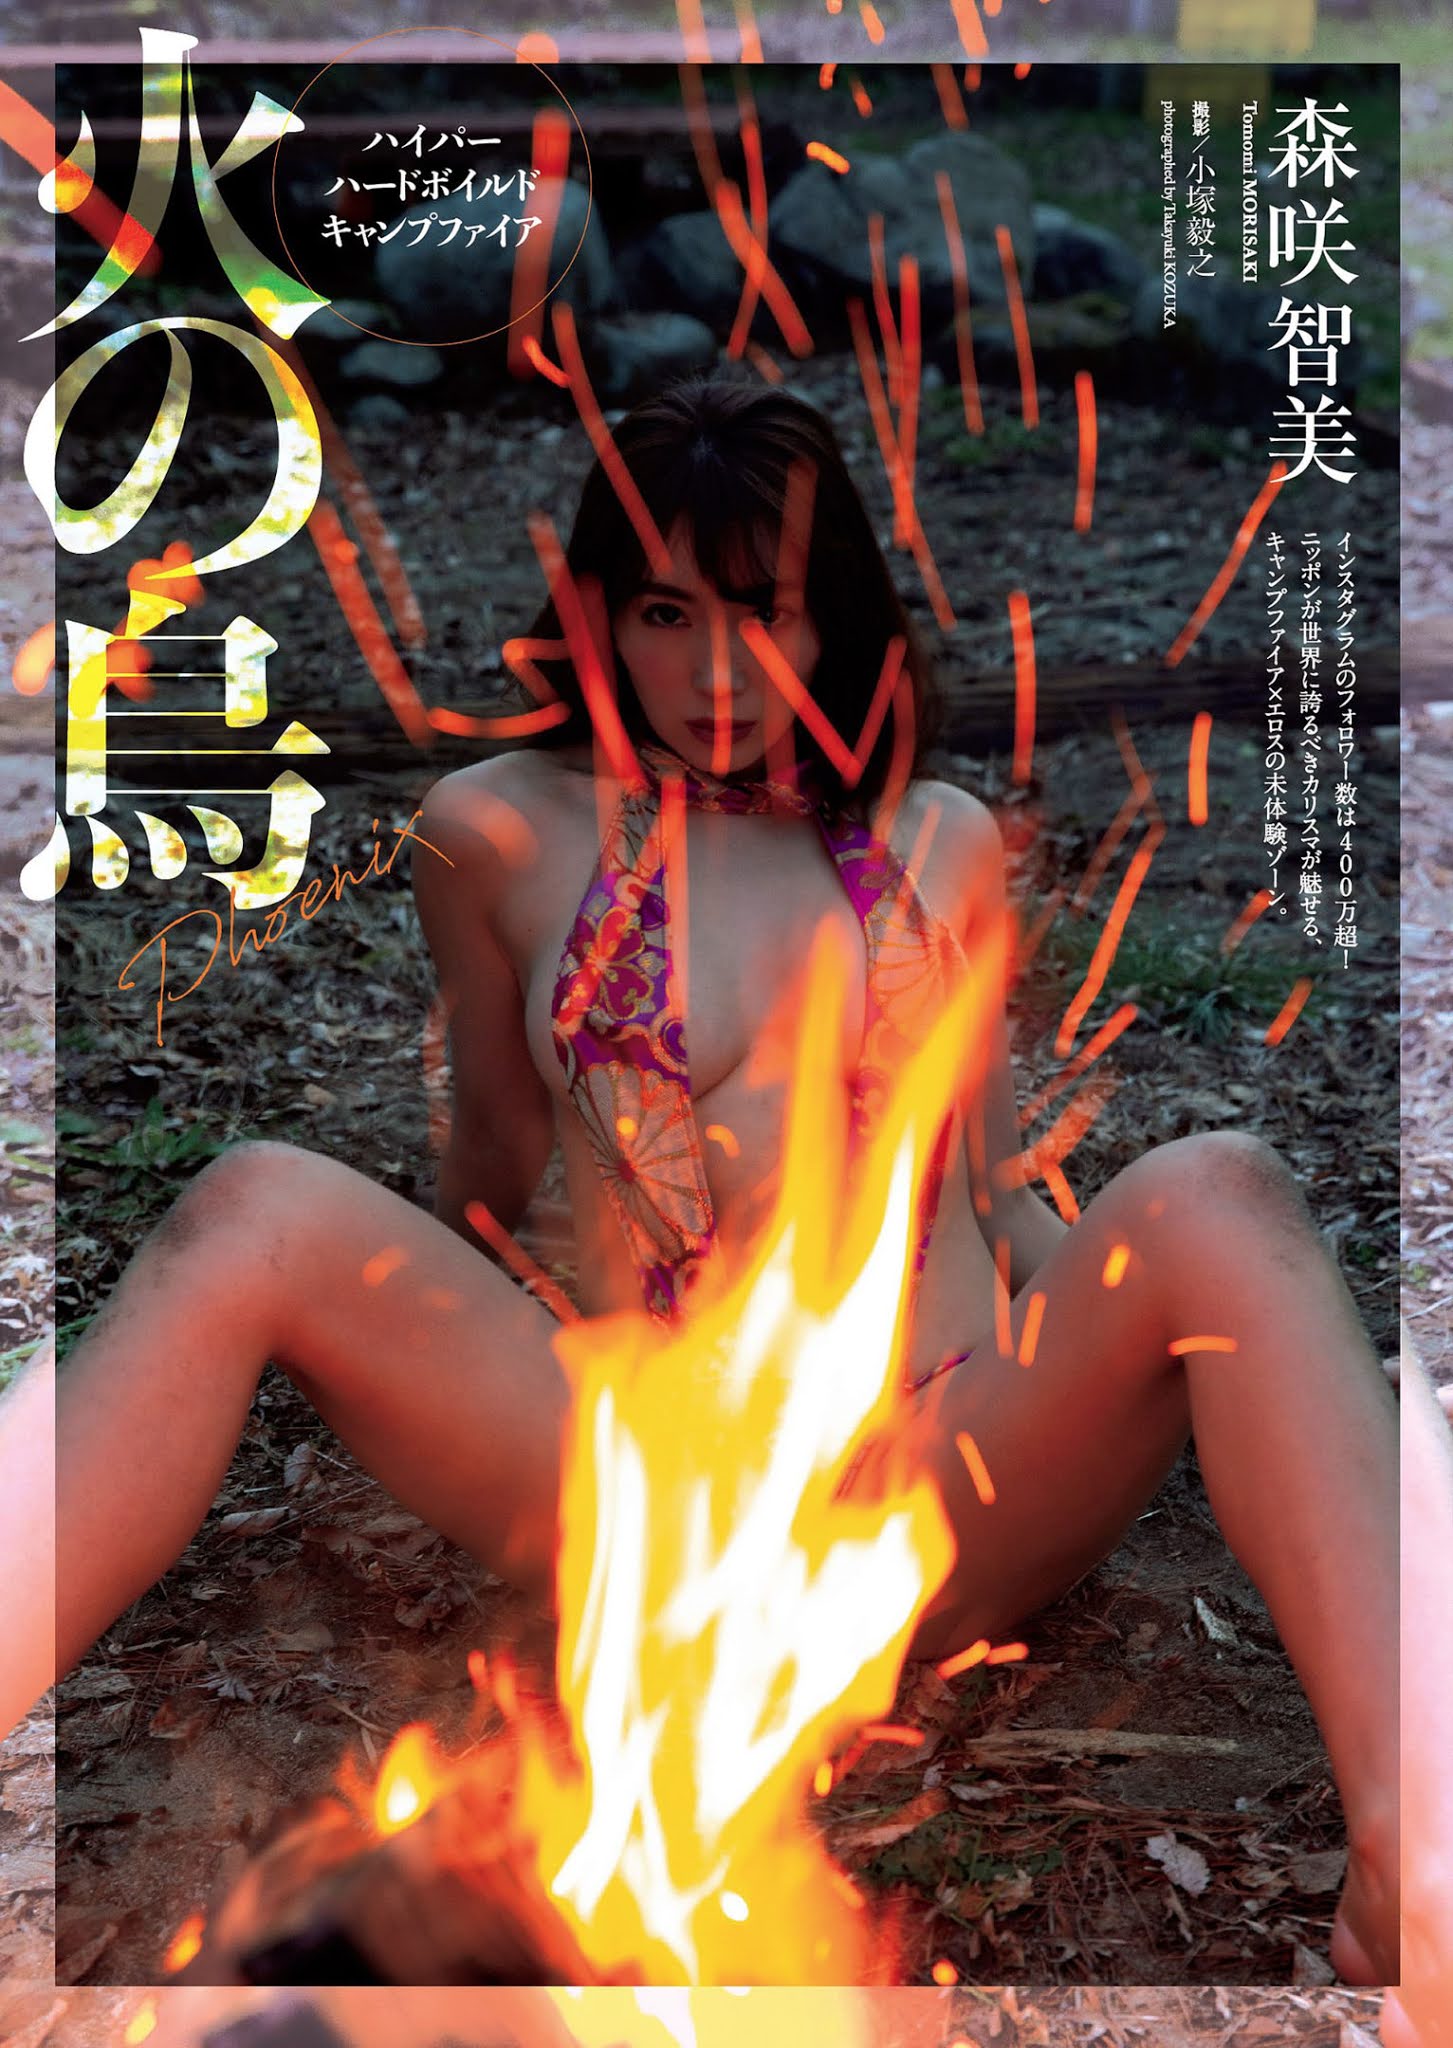 Tomomi Morisaki 森咲智美, Weekly Playboy 2021 No.19-20 (週刊プレイボーイ 2021年19-20号)